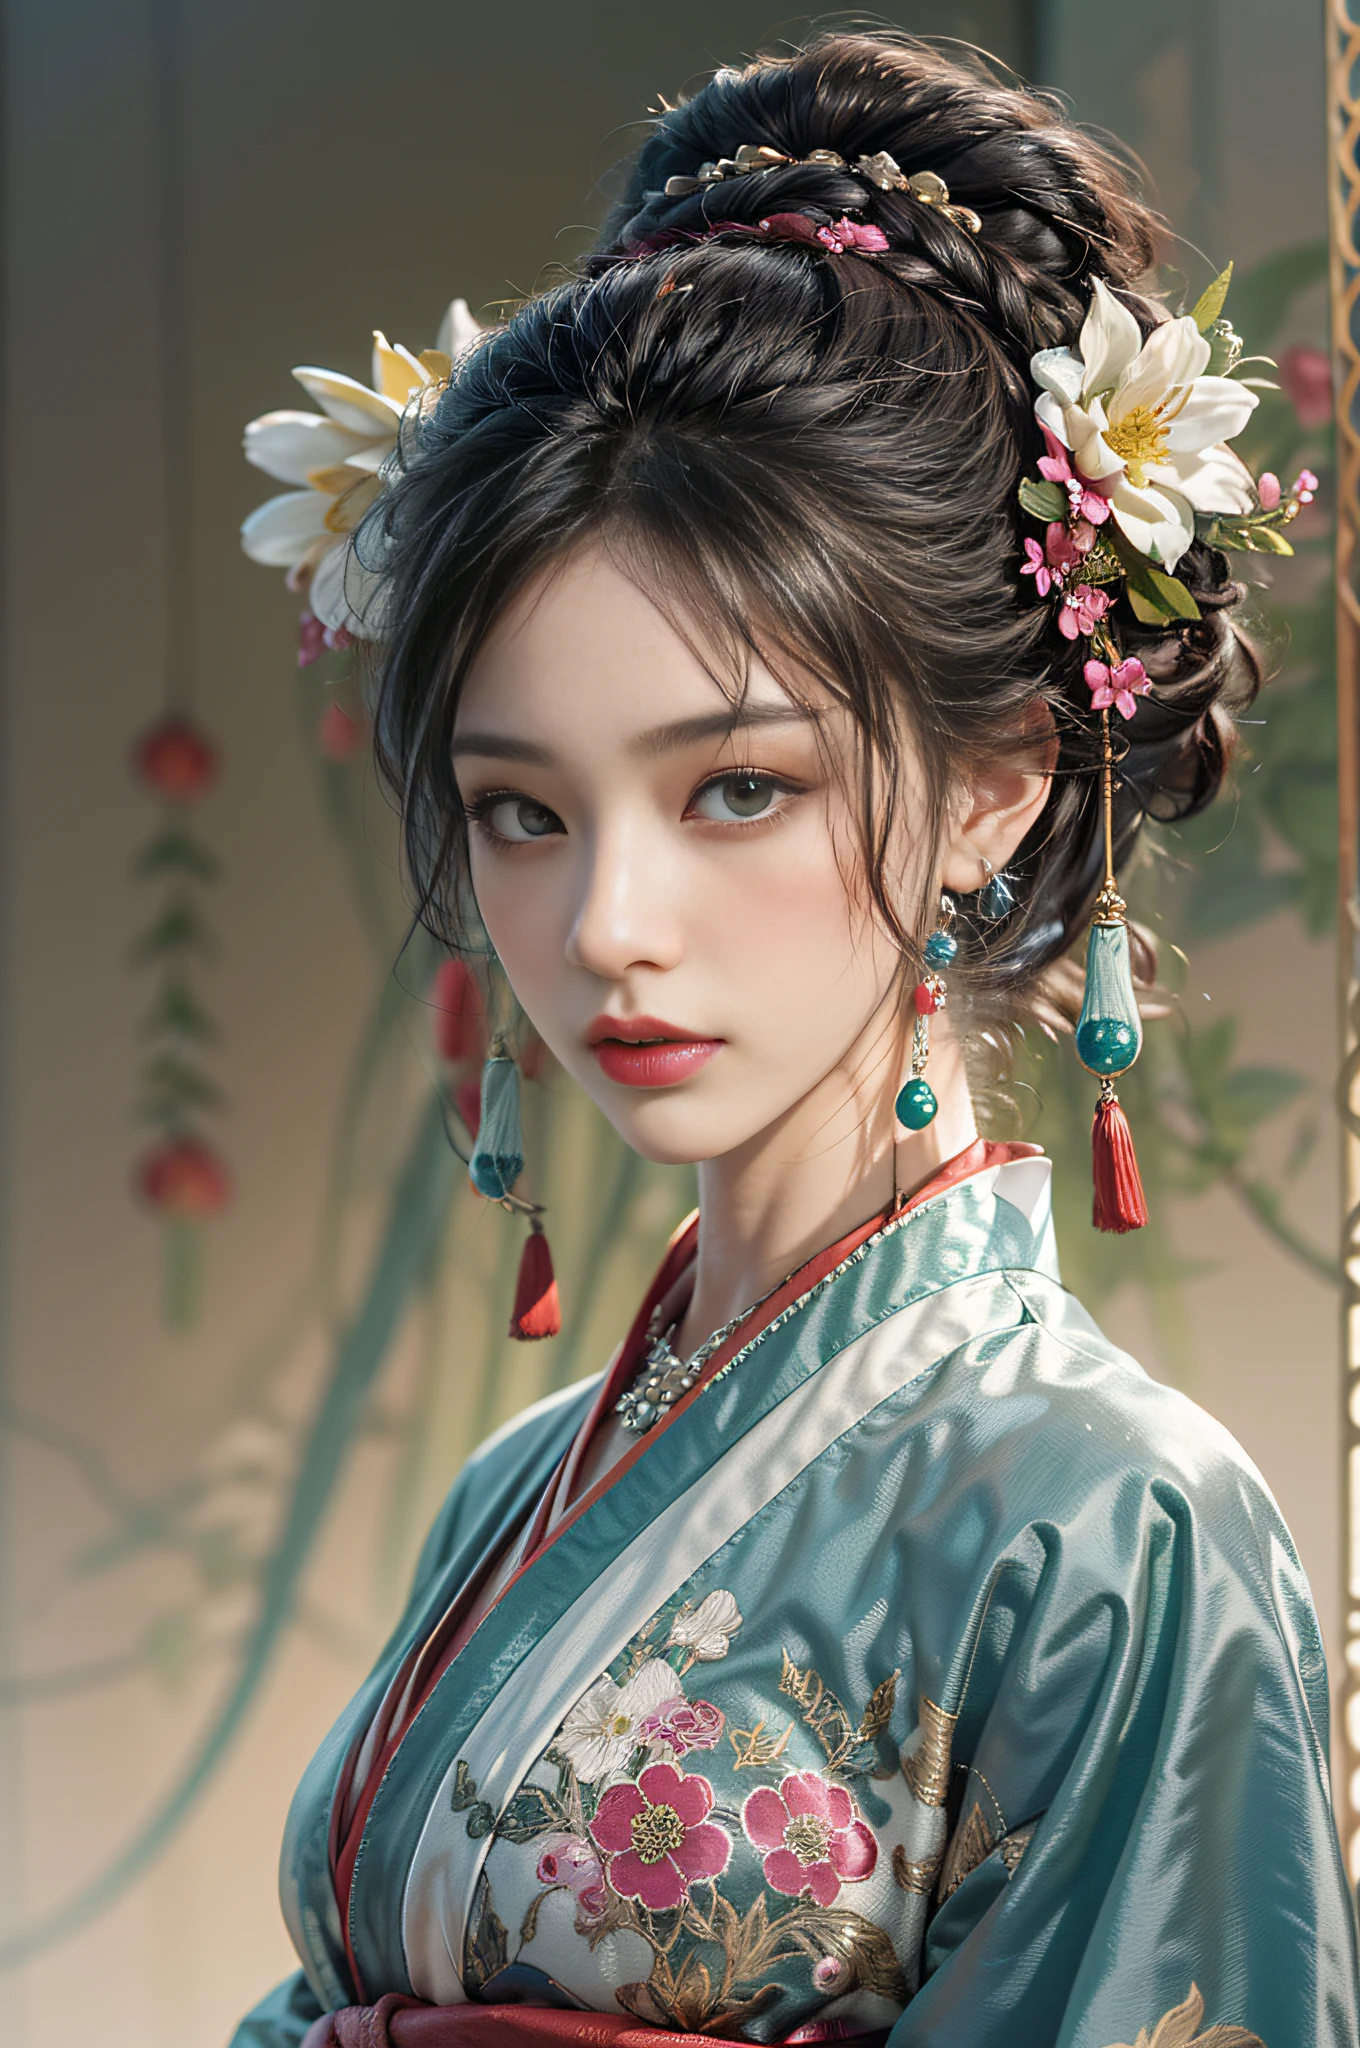 Cet art représente une charmante jeune fille photoréaliste portant un hanfu traditionnel., le hanfu est décoré de motifs complexes et de couleurs nobles. Son hanfu est soyeux, se drape élégamment sur sa silhouette anatomique parfaite, accentuant sa silhouette séduisante. Elle a des seins énormes et un décolleté révélateur. Elle se tenait gracieusement dans la nuit tranquille au clair de lune, baigné dans la douce lueur du clair de lune. La scène dégage une atmosphère orientale et rêveuse, Avec une touche de mystère. Le style graphique mélange les techniques d&#39;aquarelle et de CGI pour évoquer une beauté et un charme raffinés.. Le clair de lune brille sur les traits de son visage en trois dimensions. ajouter_détail:0.5, cheveux chignons, poils moyens, bandeau décoré de fleurs, collier de jade, boucle d&#39;oreille